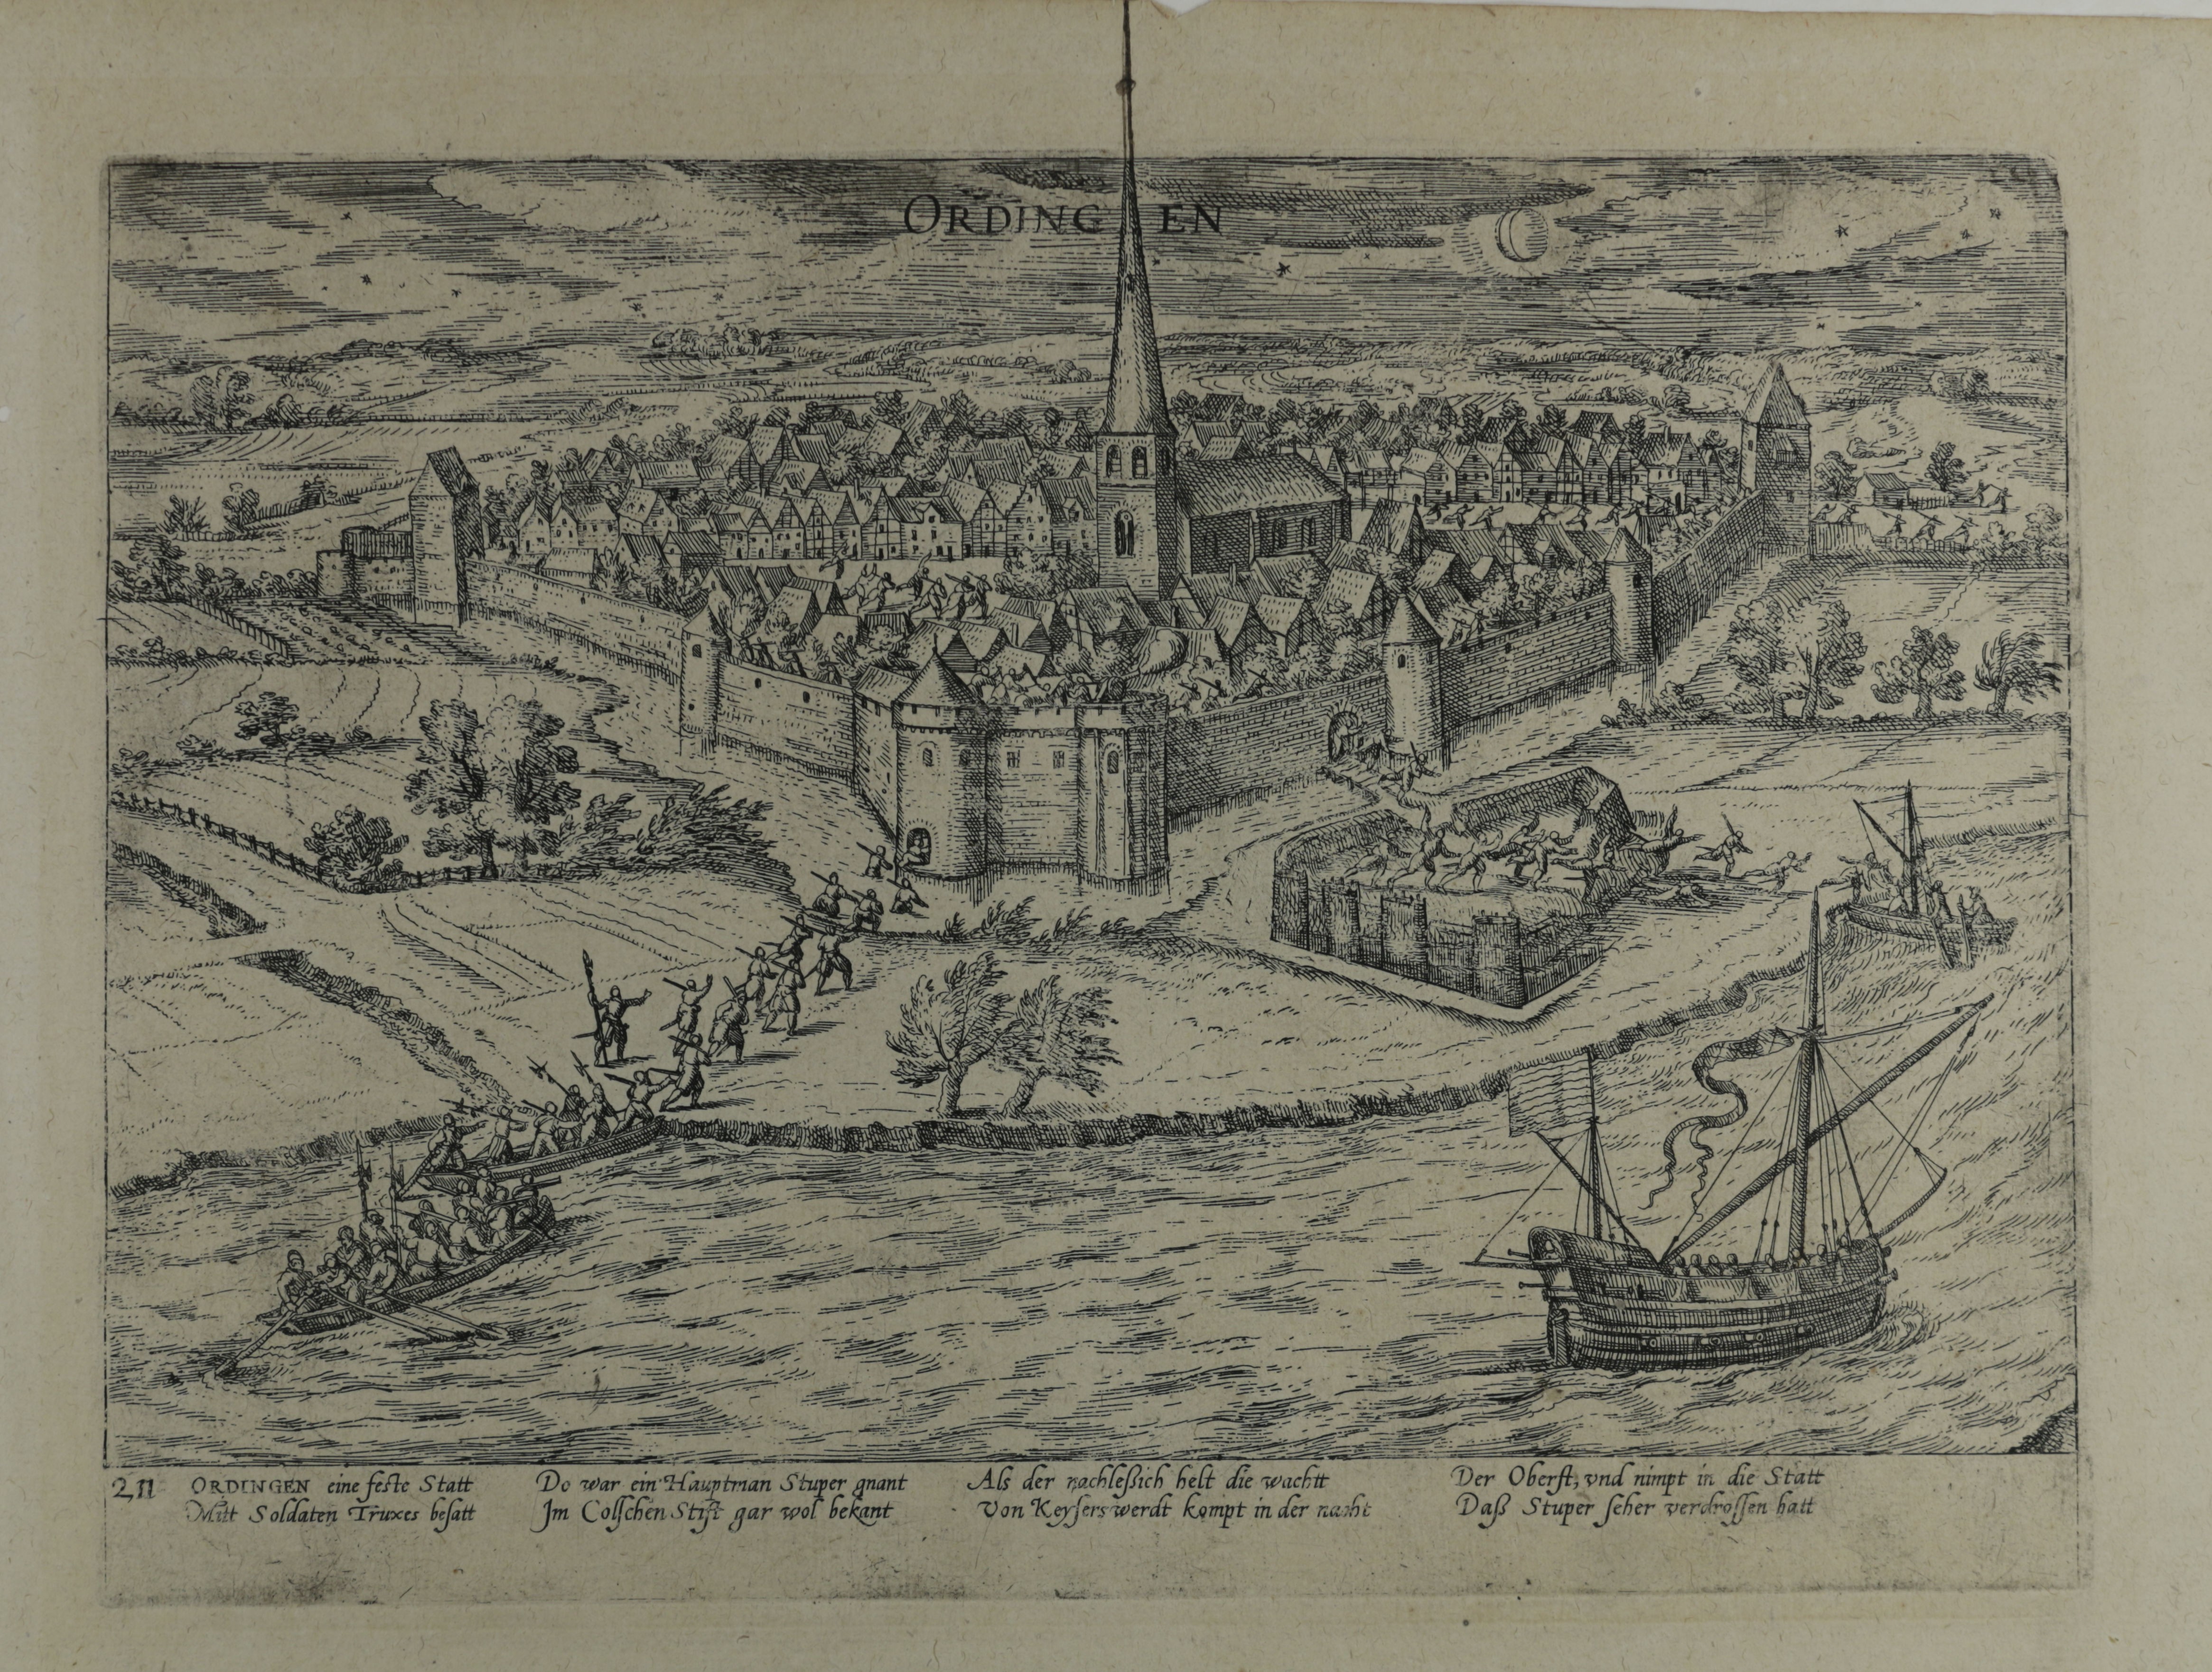 Kupferstich zur Erstürmung der Stadt Ürdingen, 1583/84 (Hogenberg) (Städtisches Museum Schloss Rheydt CC BY)